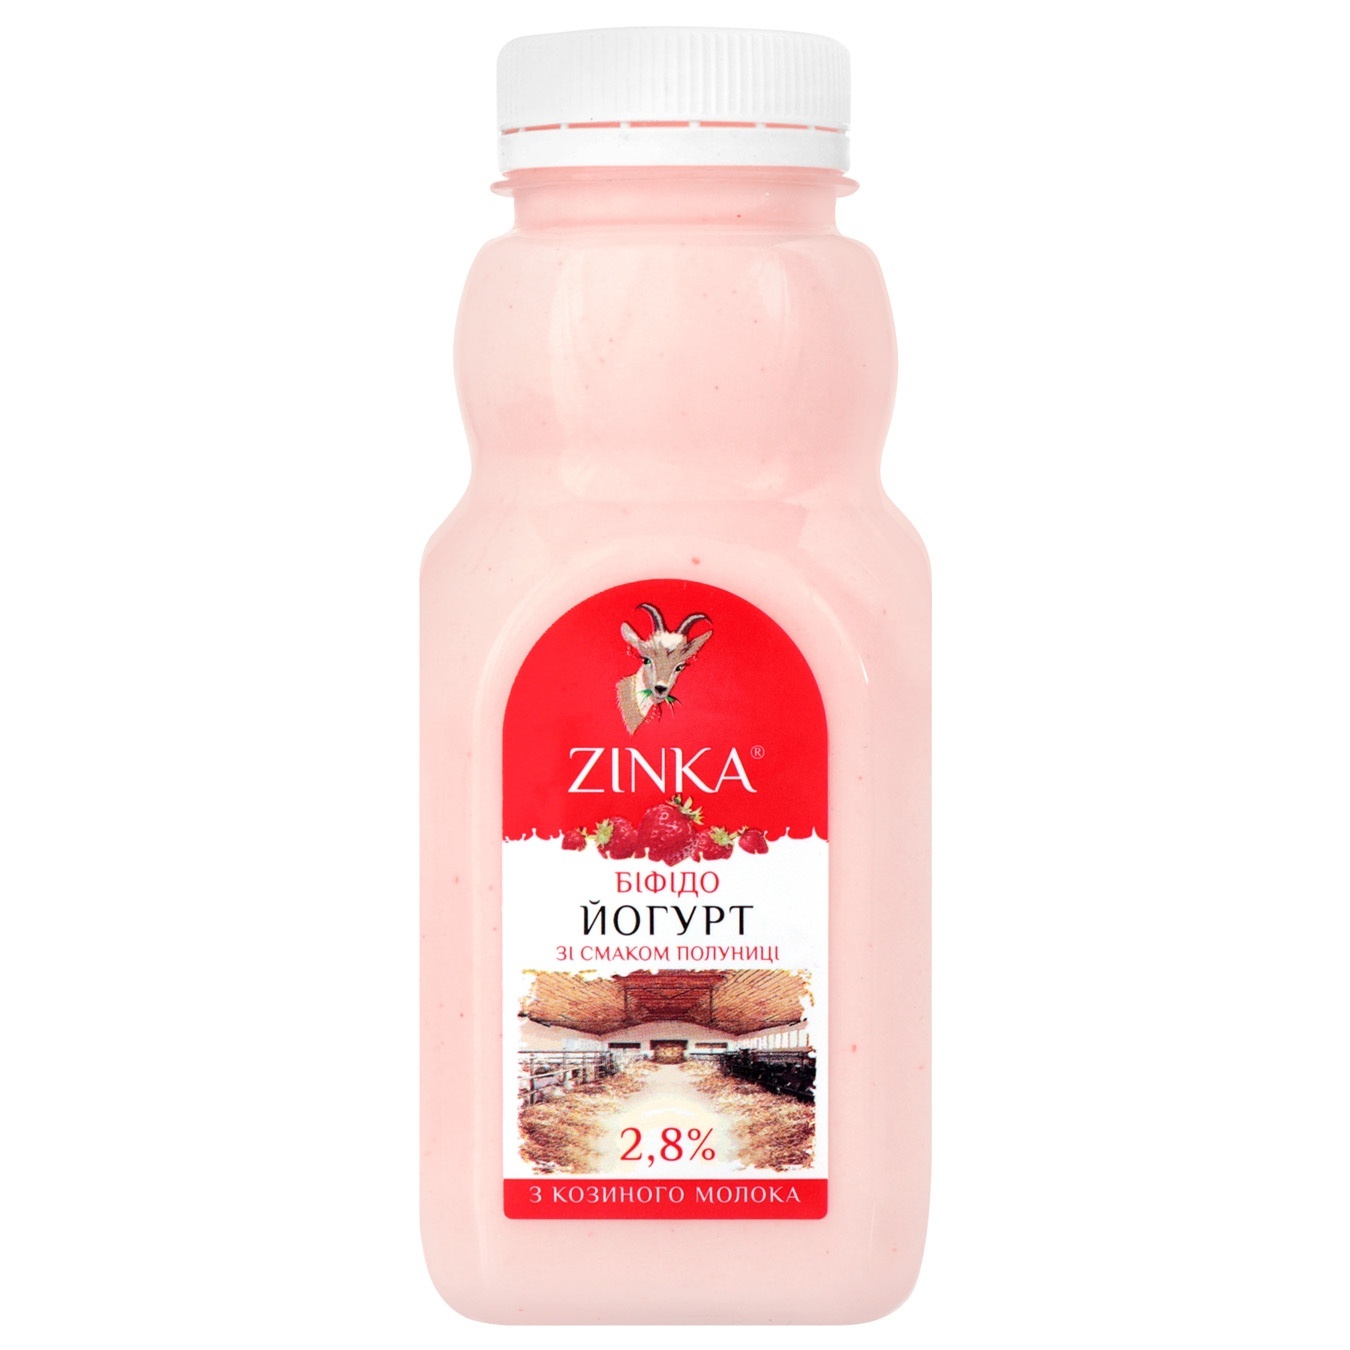 Zinka Strawberries From Goat's Milk Bifidoyogurt 2,8% 300g